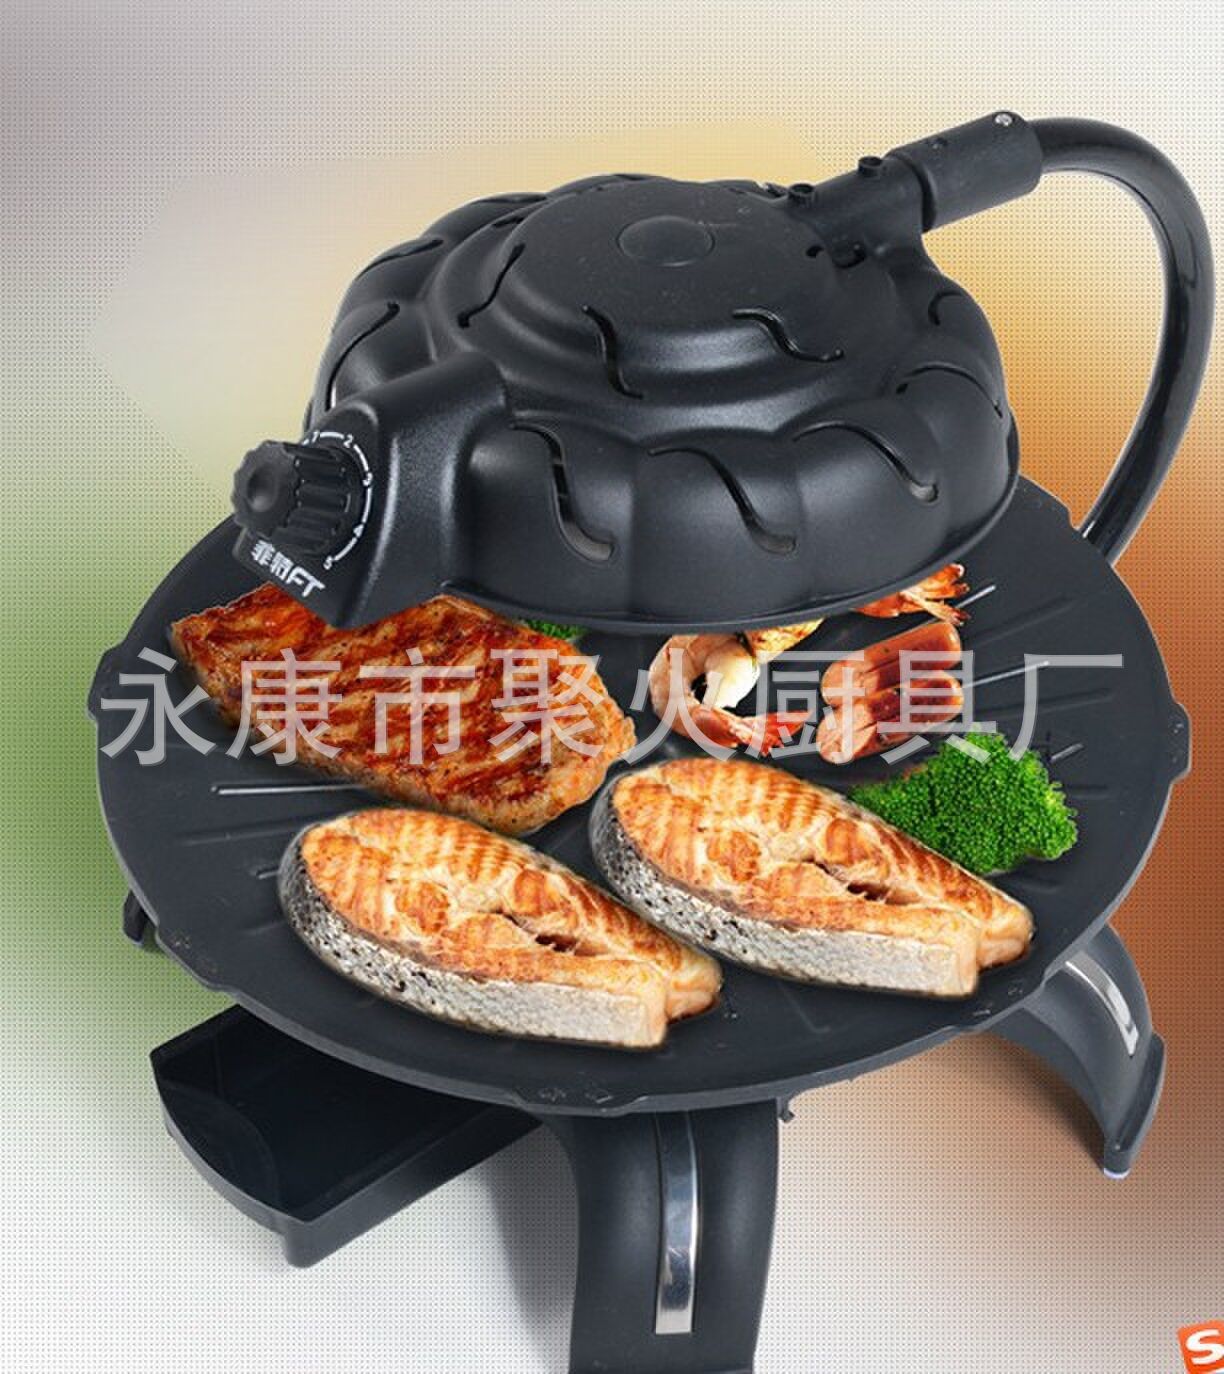 全自动无烟电烤盘 3D红外线可旋转烧烤机 家用商用电烤炉 无烟